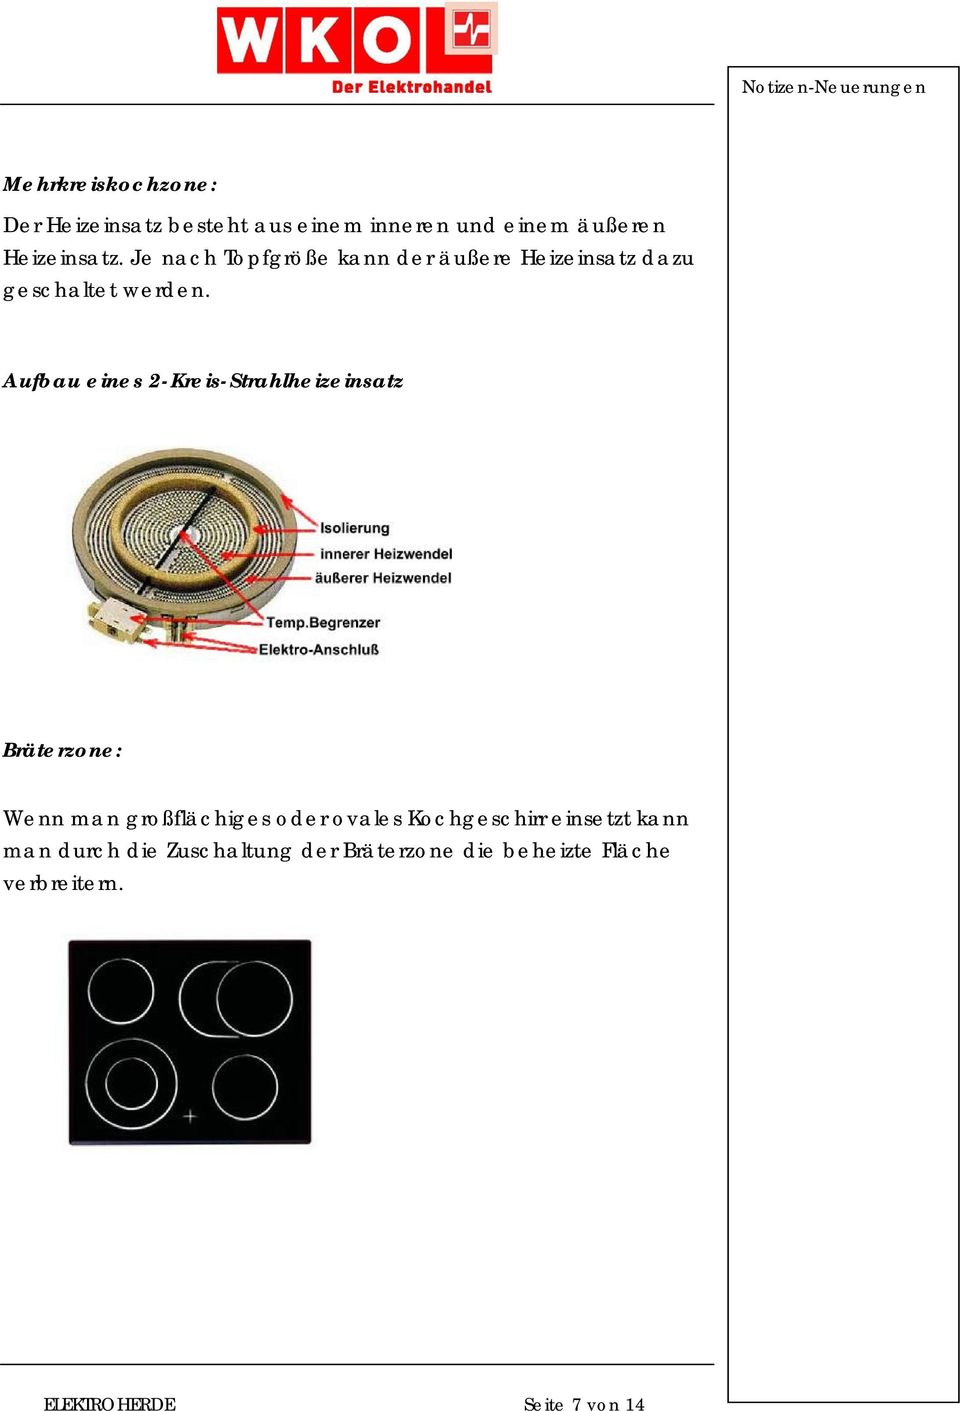 Aufbau eines 2-Kreis-Strahlheizeinsatz Bräterzone: Wenn man großflächiges oder ovales